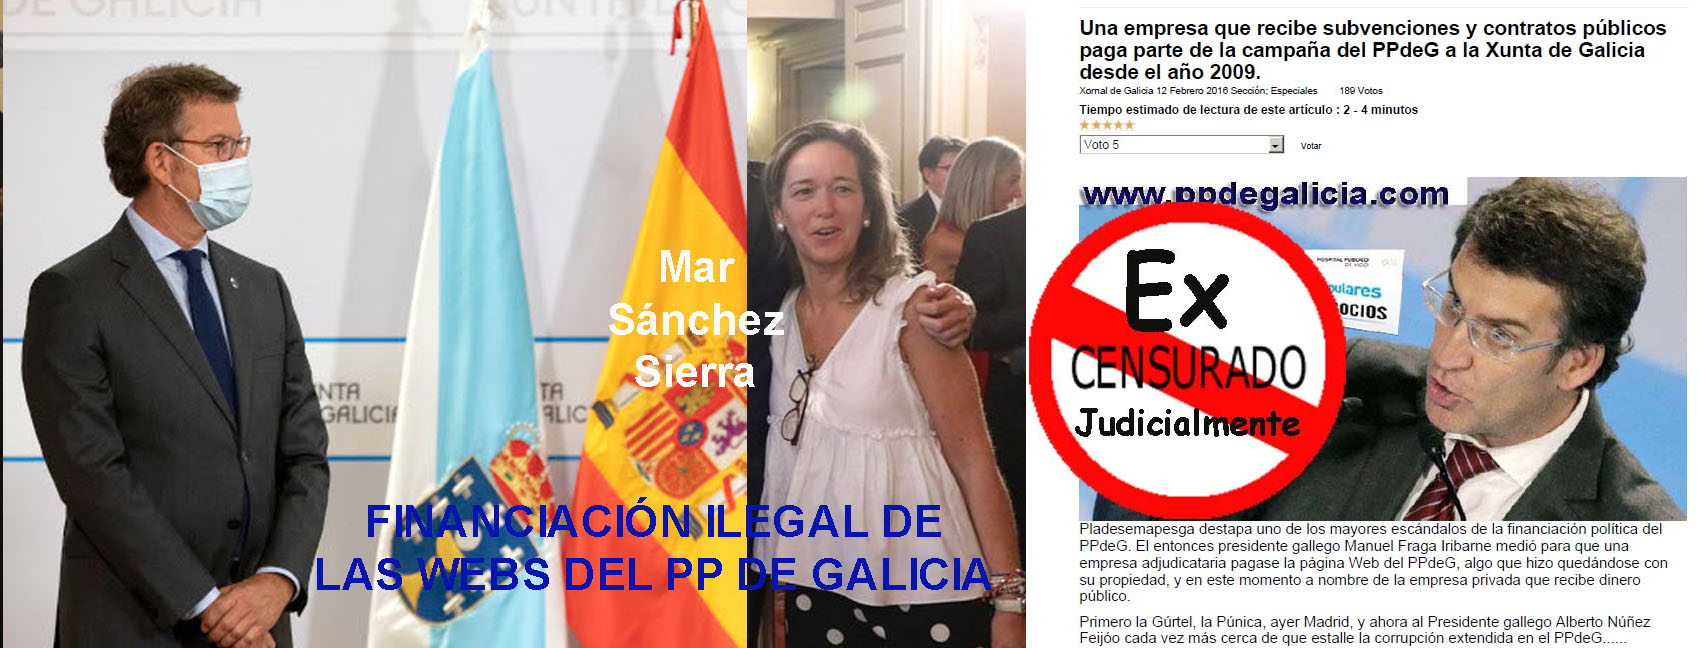 María del Mar Sánchez Sierra regaló un piso de protección oficial y una  subvención de la Xunta a cambio de que le financiaran las webs oficiales  del PP de Galicia y de